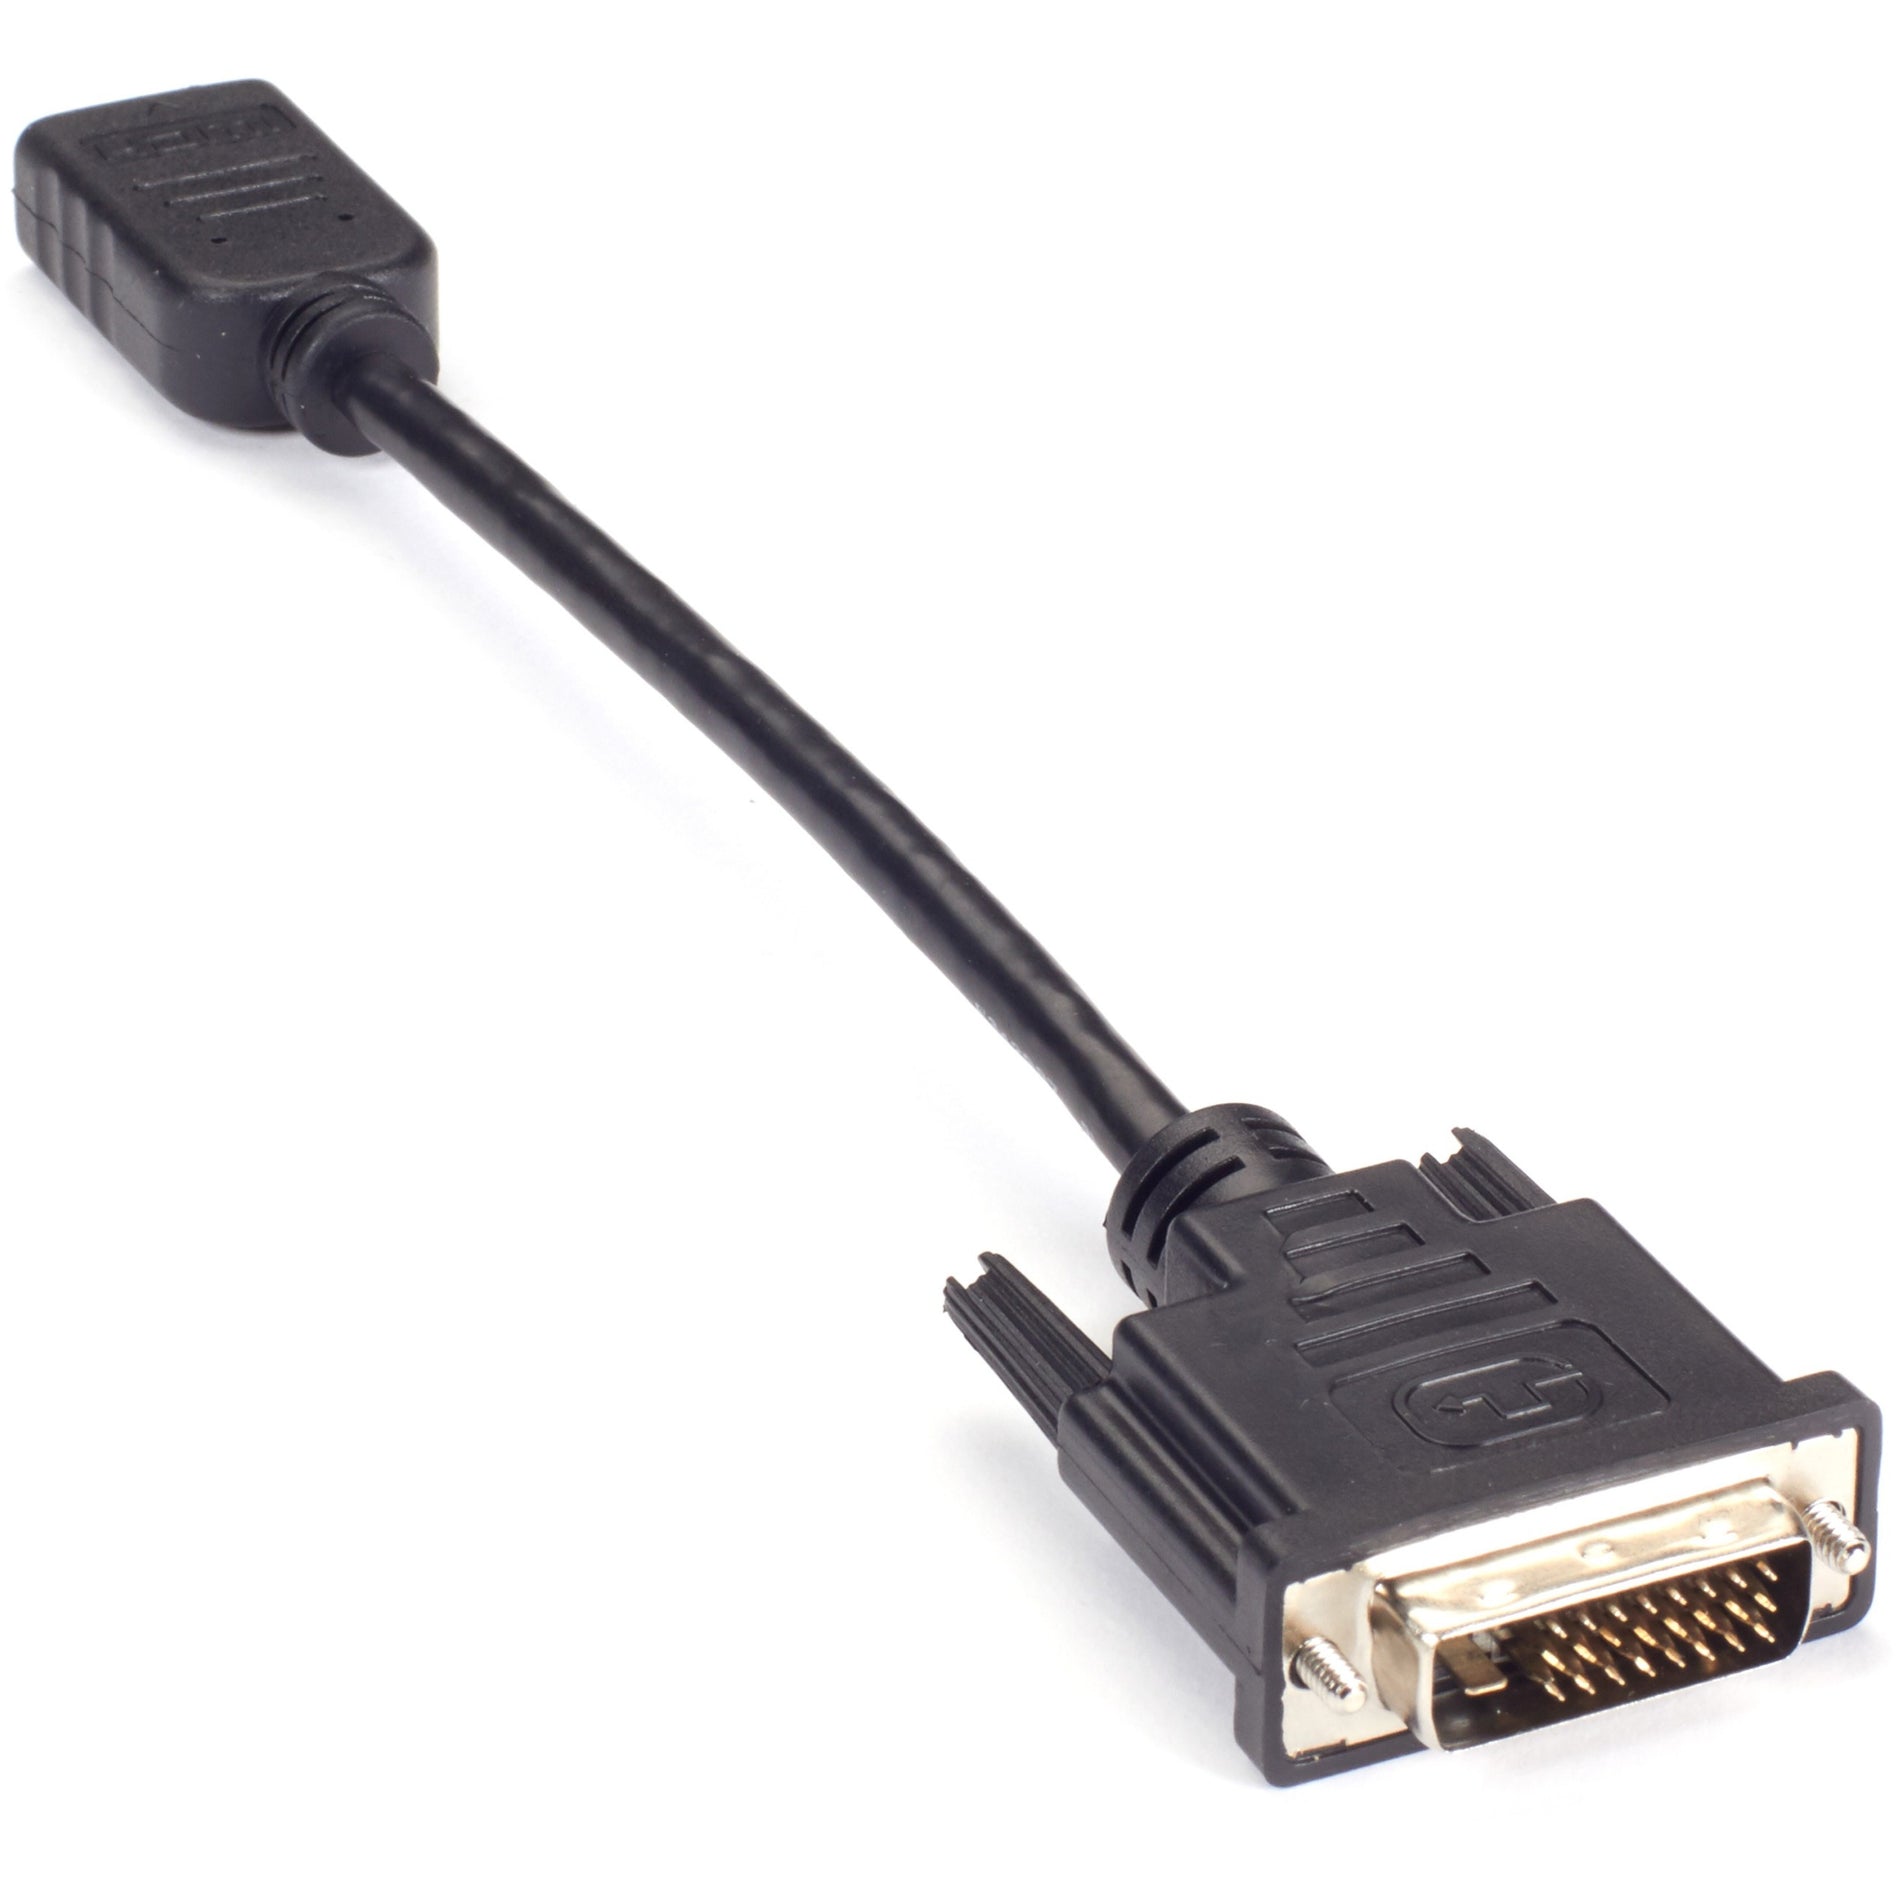 الصندوق الأسود VA-DVID-HDMI محول فيديو دونغل - DVI-D ذكر إلى HDMI أنثى، مقاوم للتوتر، مزيد الأمان، طول الكابل 8 بوصات، دعم للقرار 1920 × 1080  Black Box العلامة التجارية